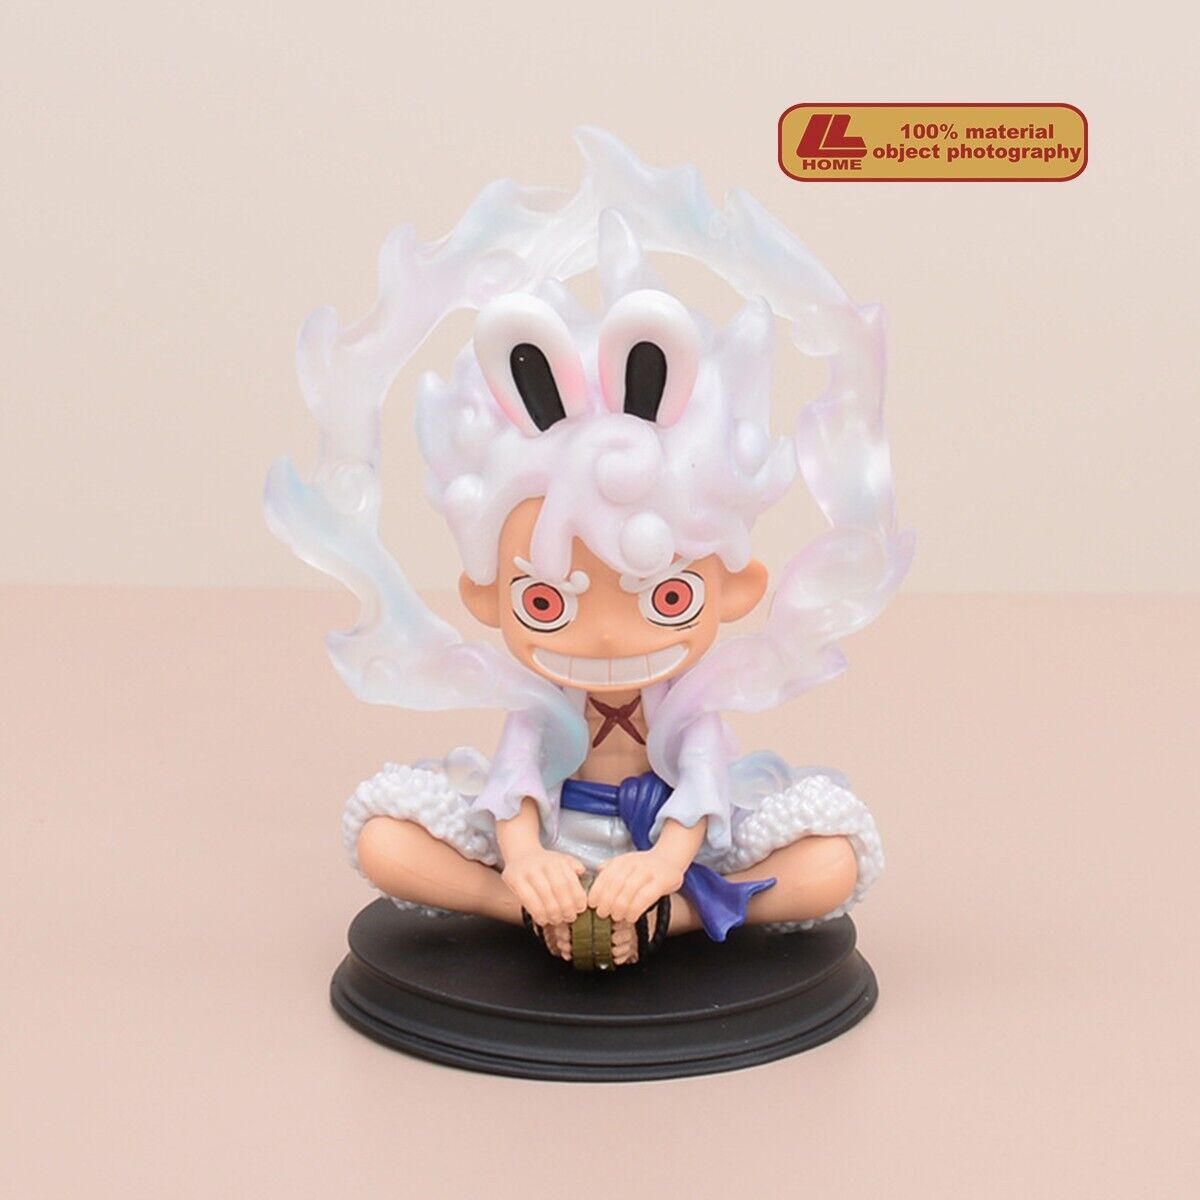 Anime OP Monkey D Luffy Gear 5th Nika Wear bunny ears Cute Figure Toy Gift